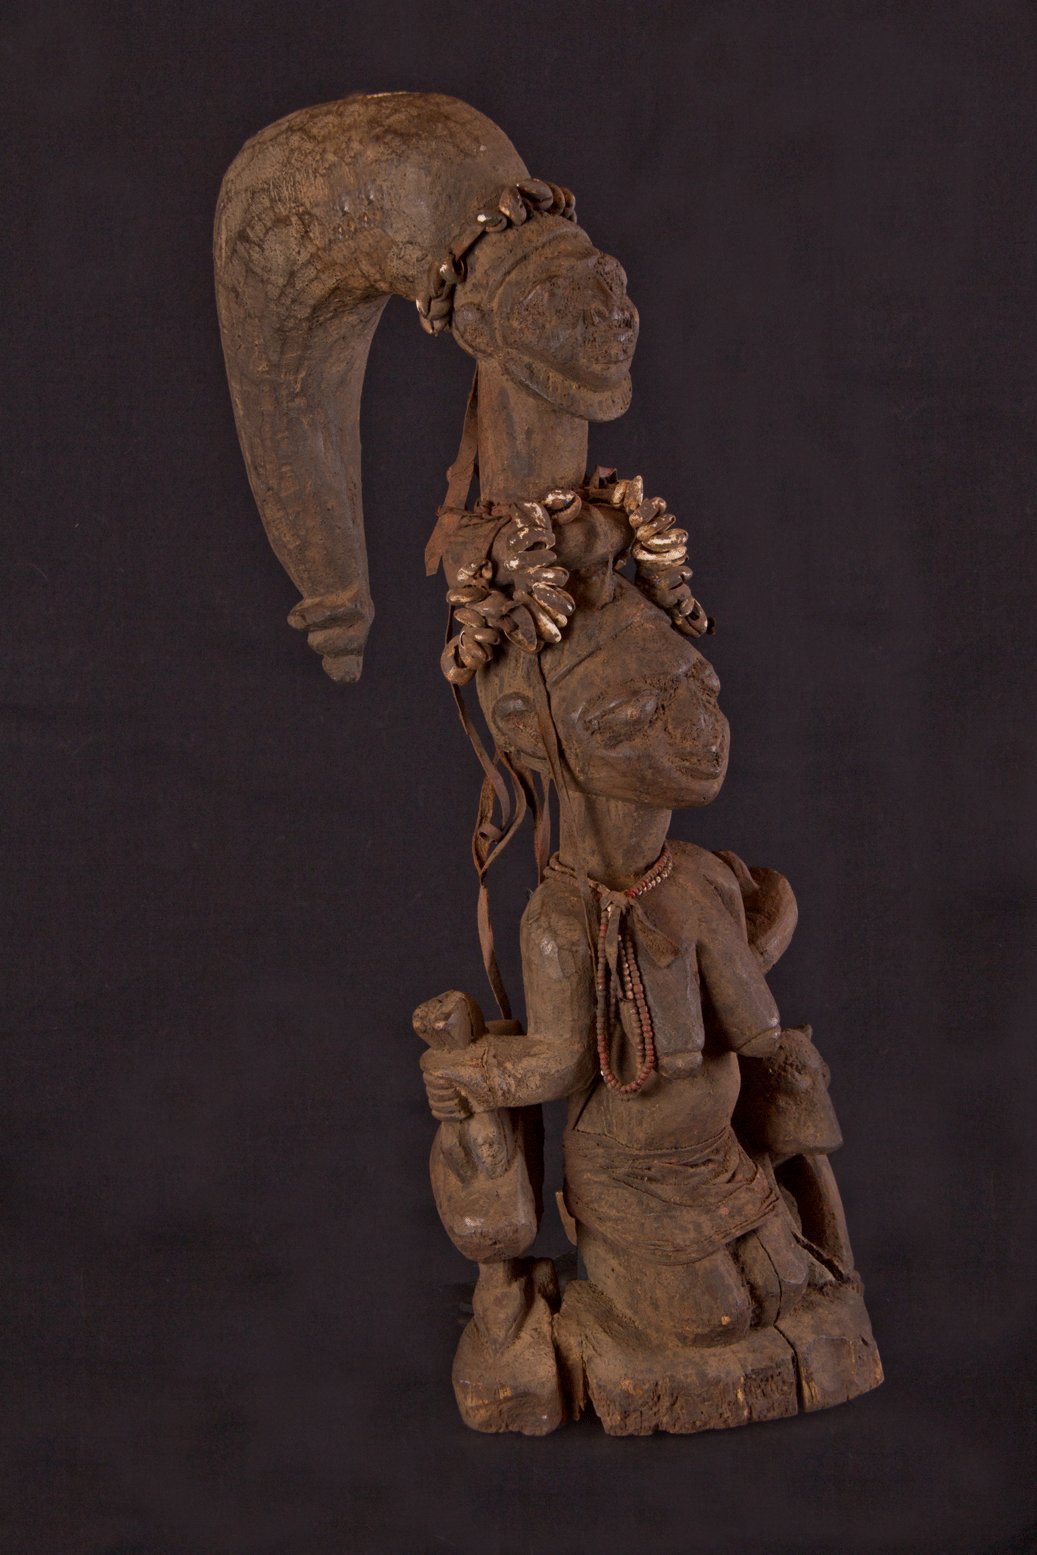 Old Yoruba figure, Nigeria, Africa